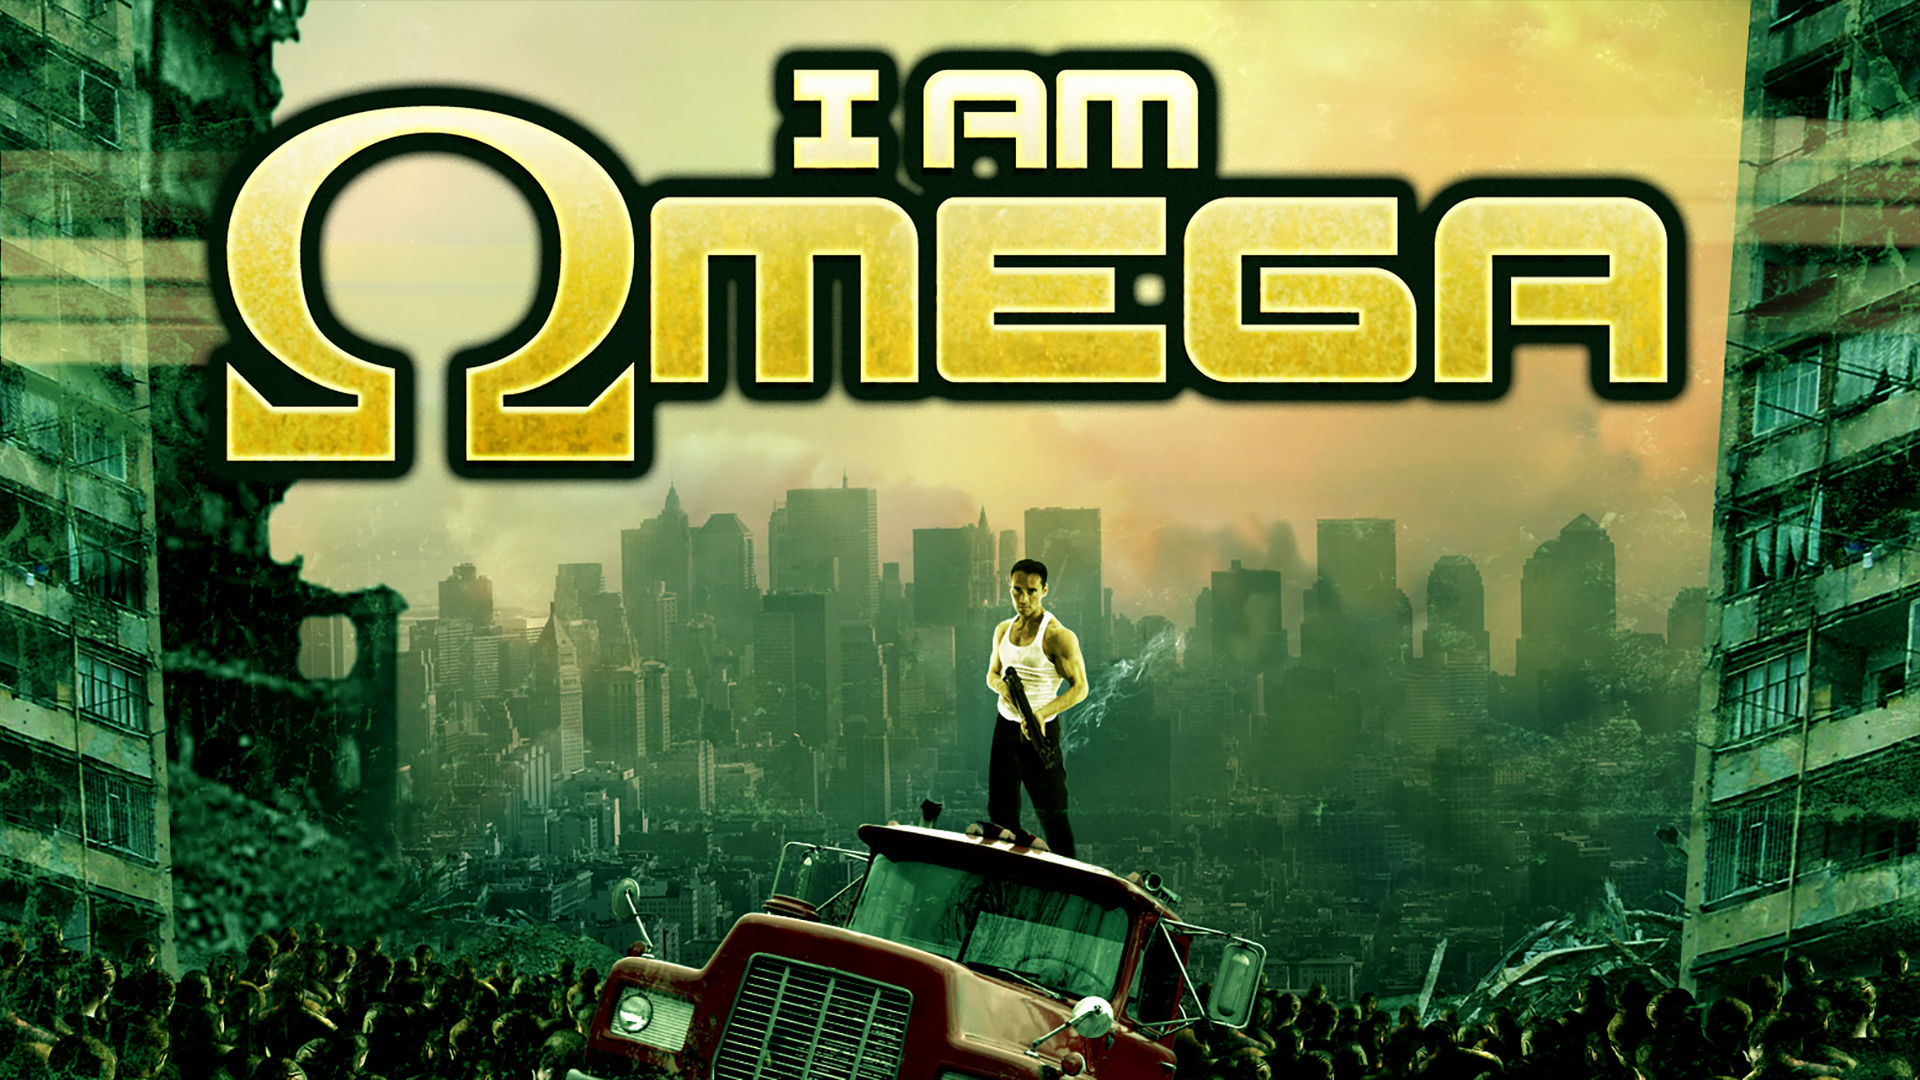 I Am Omega